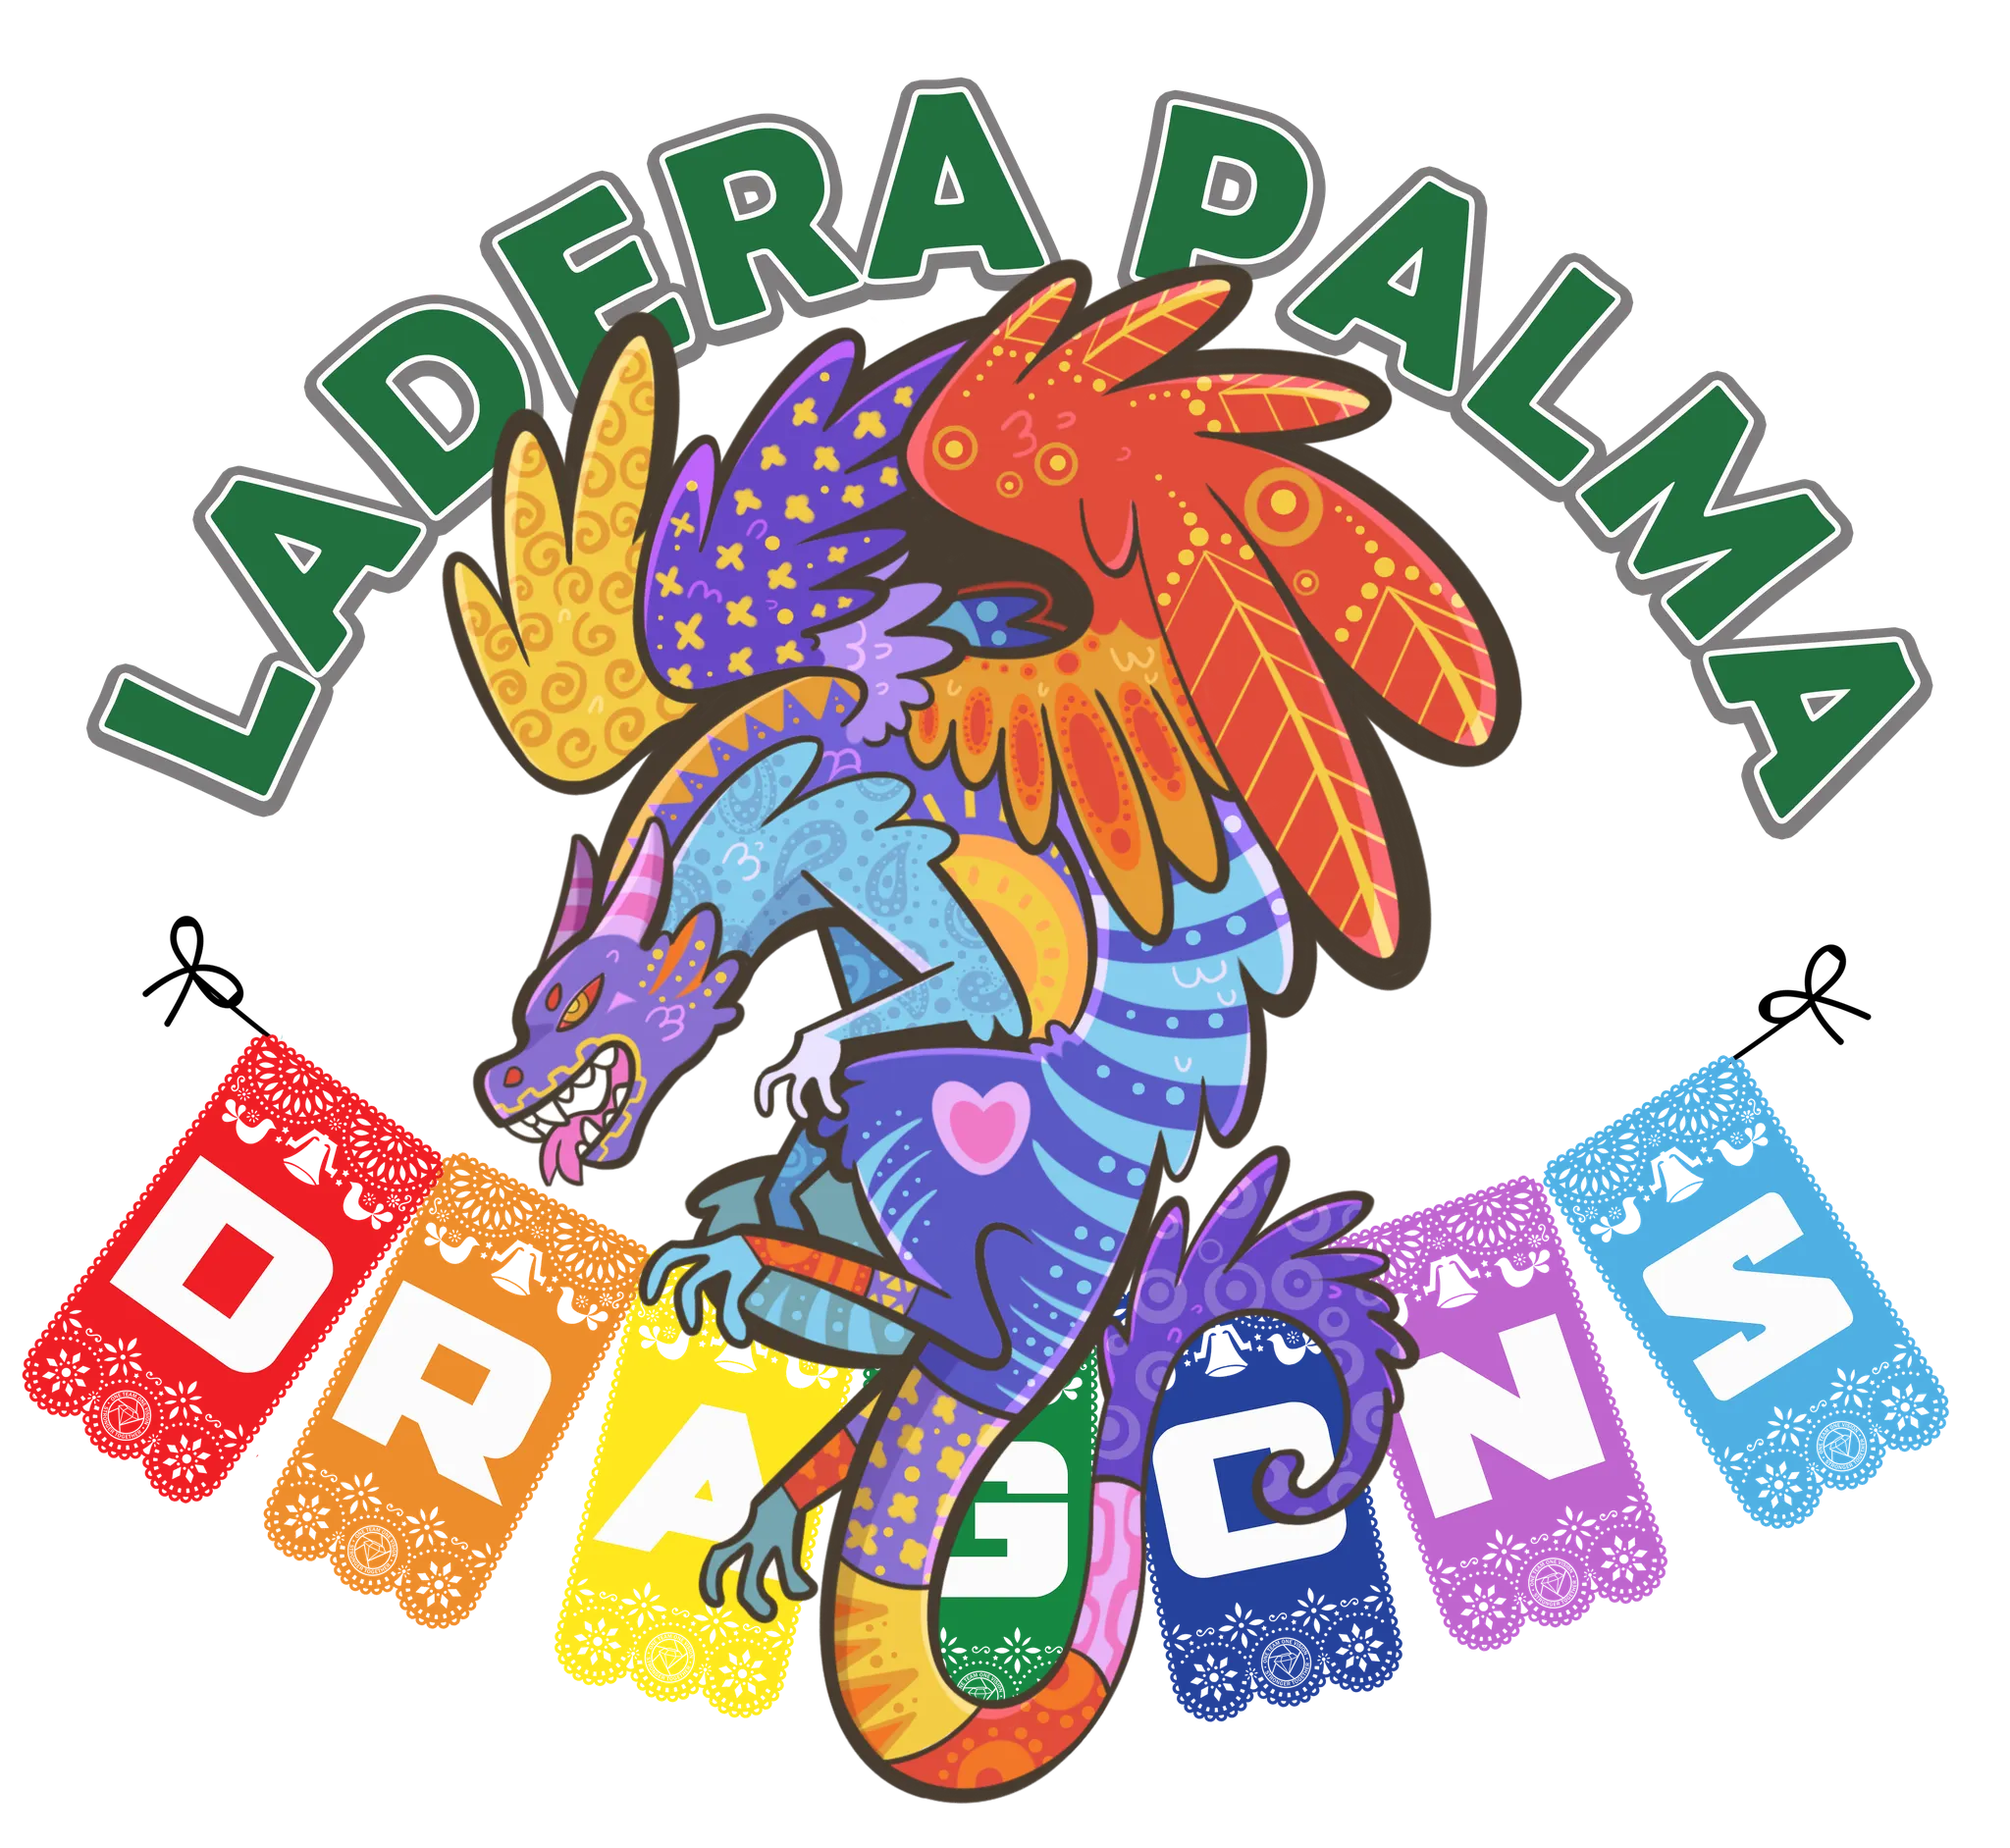 Ladera Palma Elementary